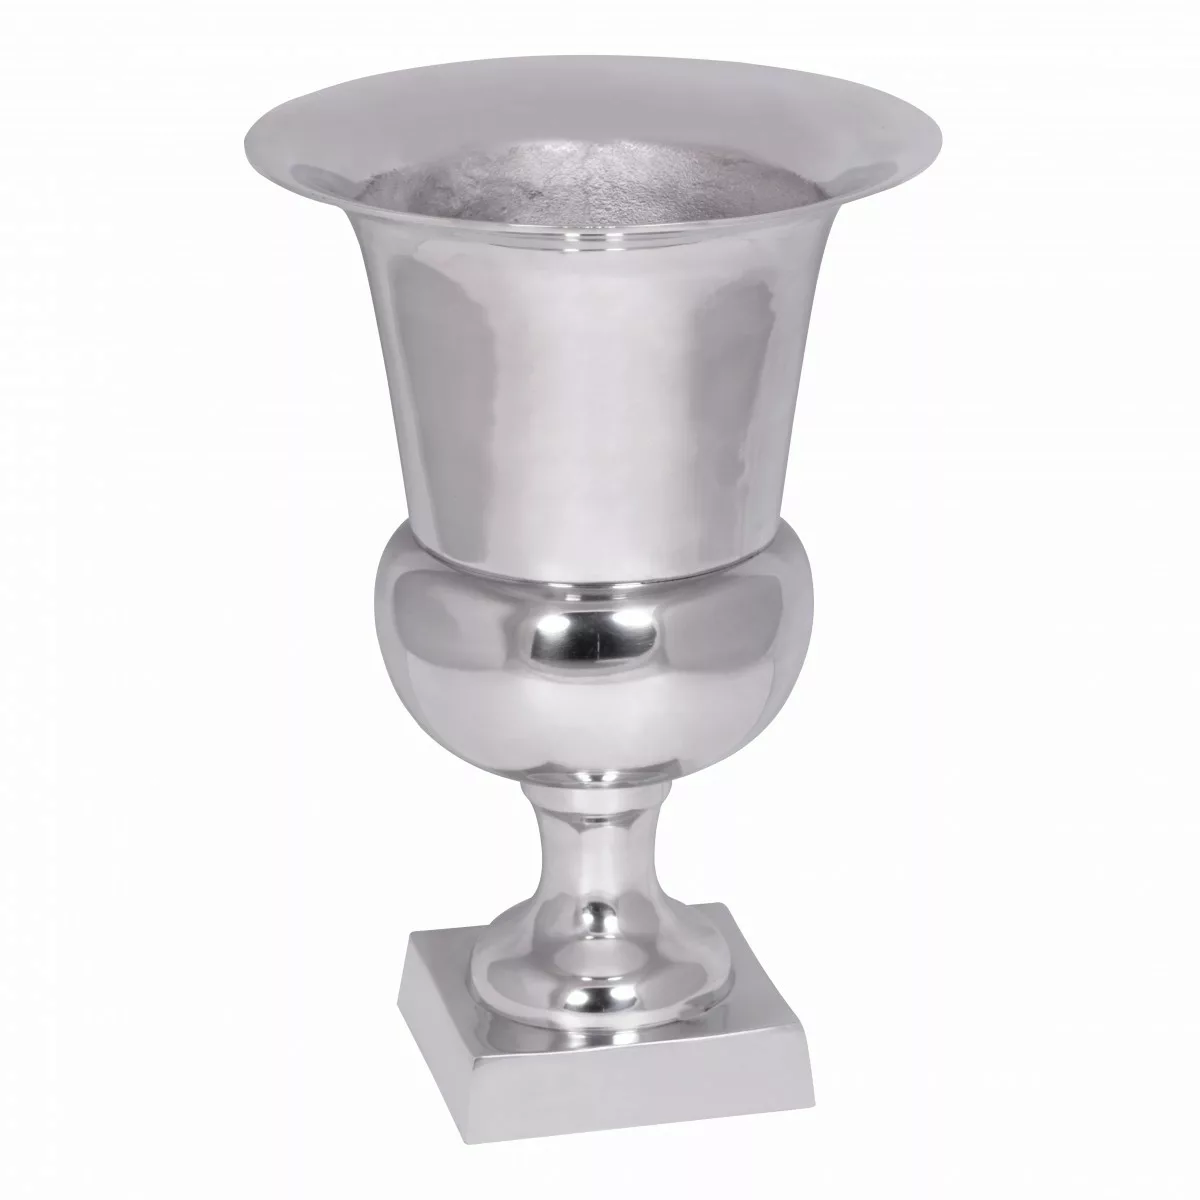 Pokal XL Aluminium 47x32 cm Silber Glänzend Design Dekoration Modern | Alu günstig online kaufen